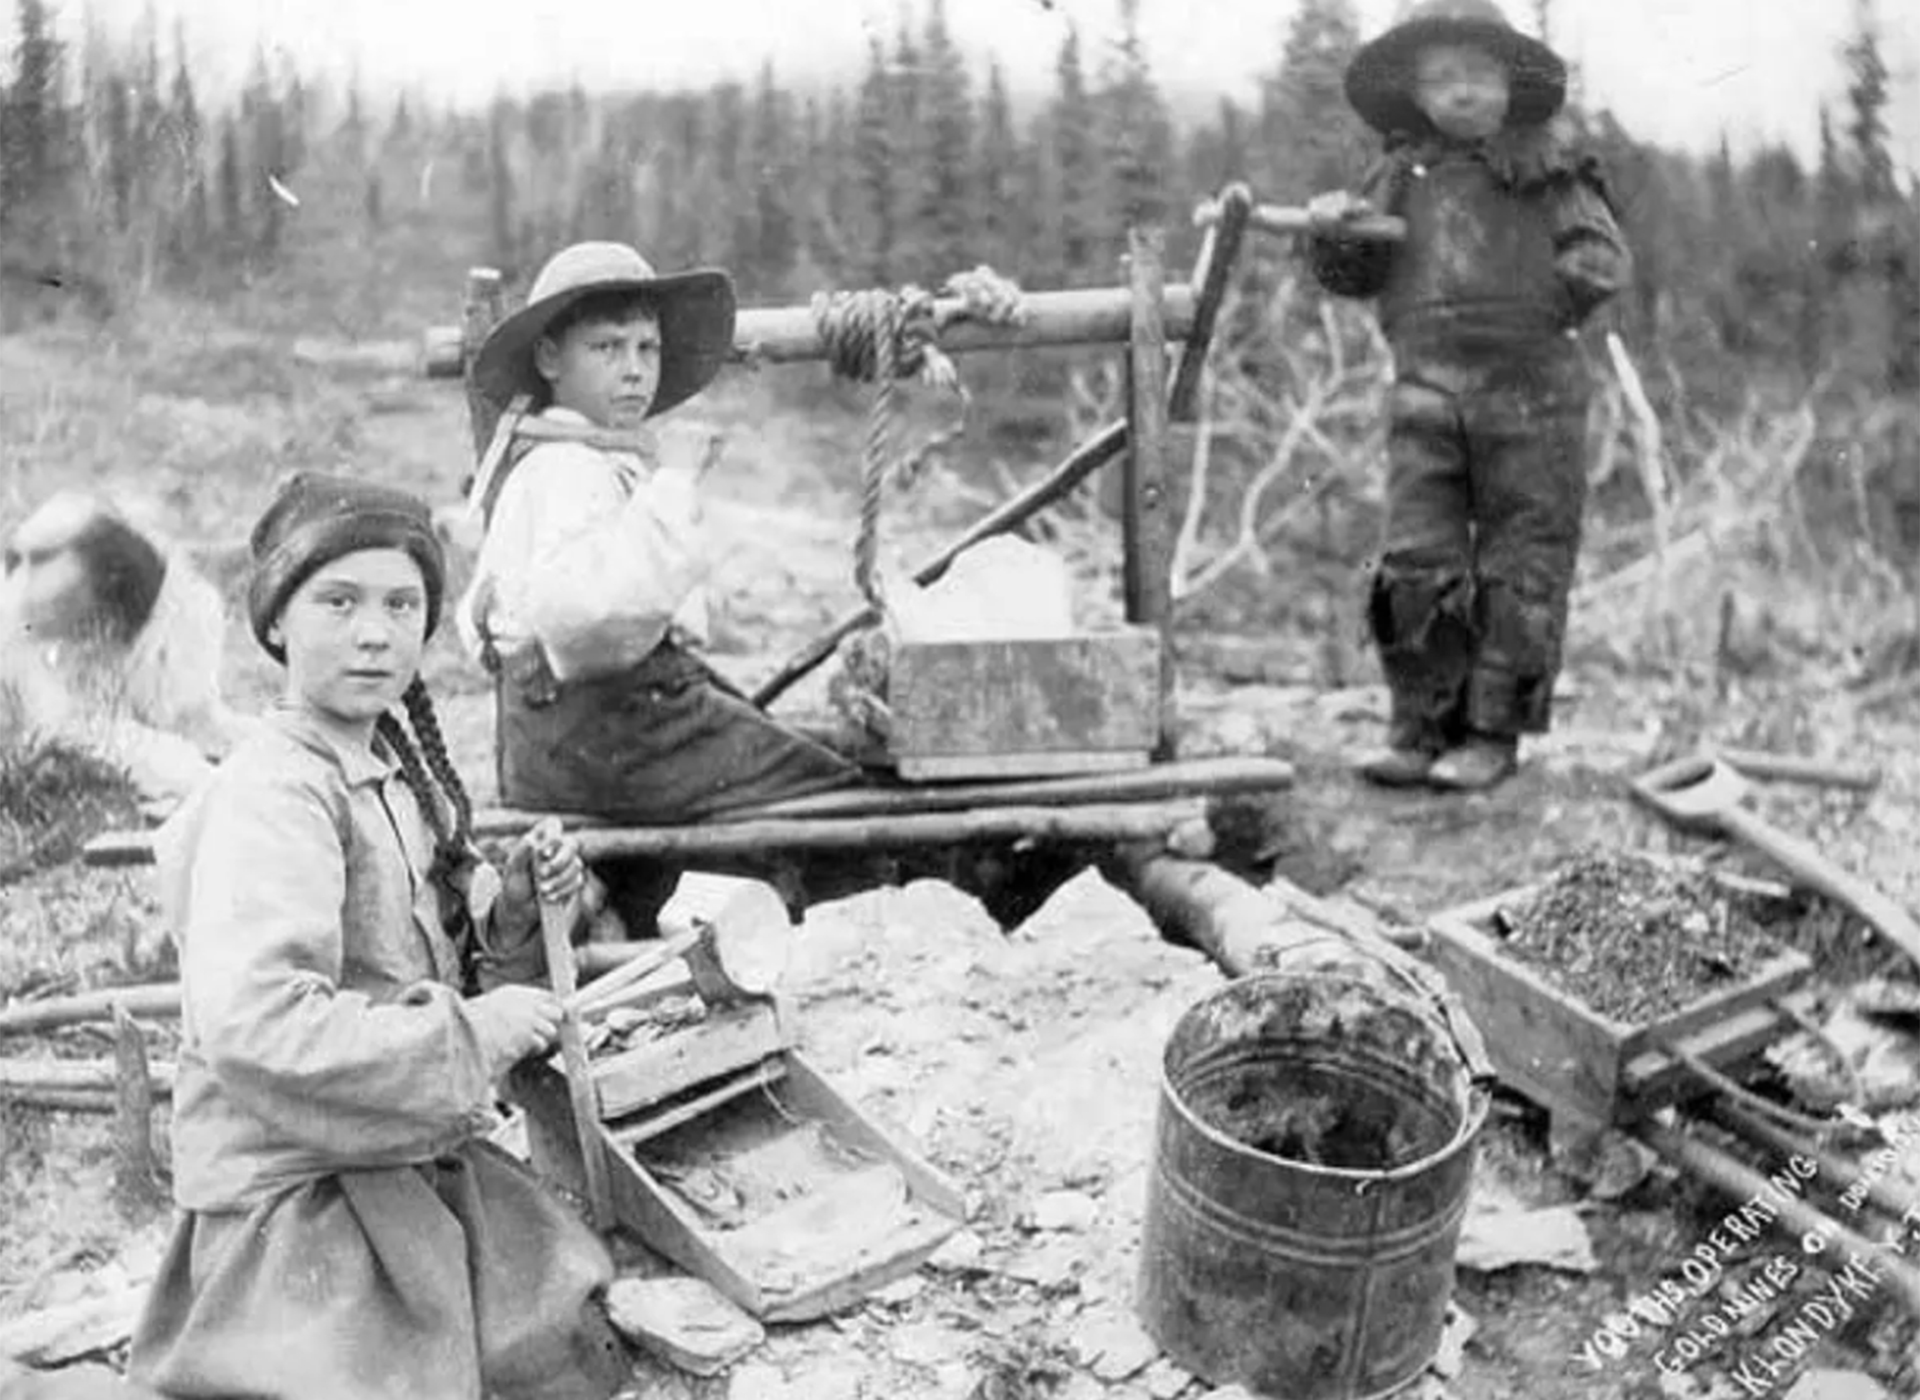 عکسی از سه کودک در حال کار در زمان گذشته